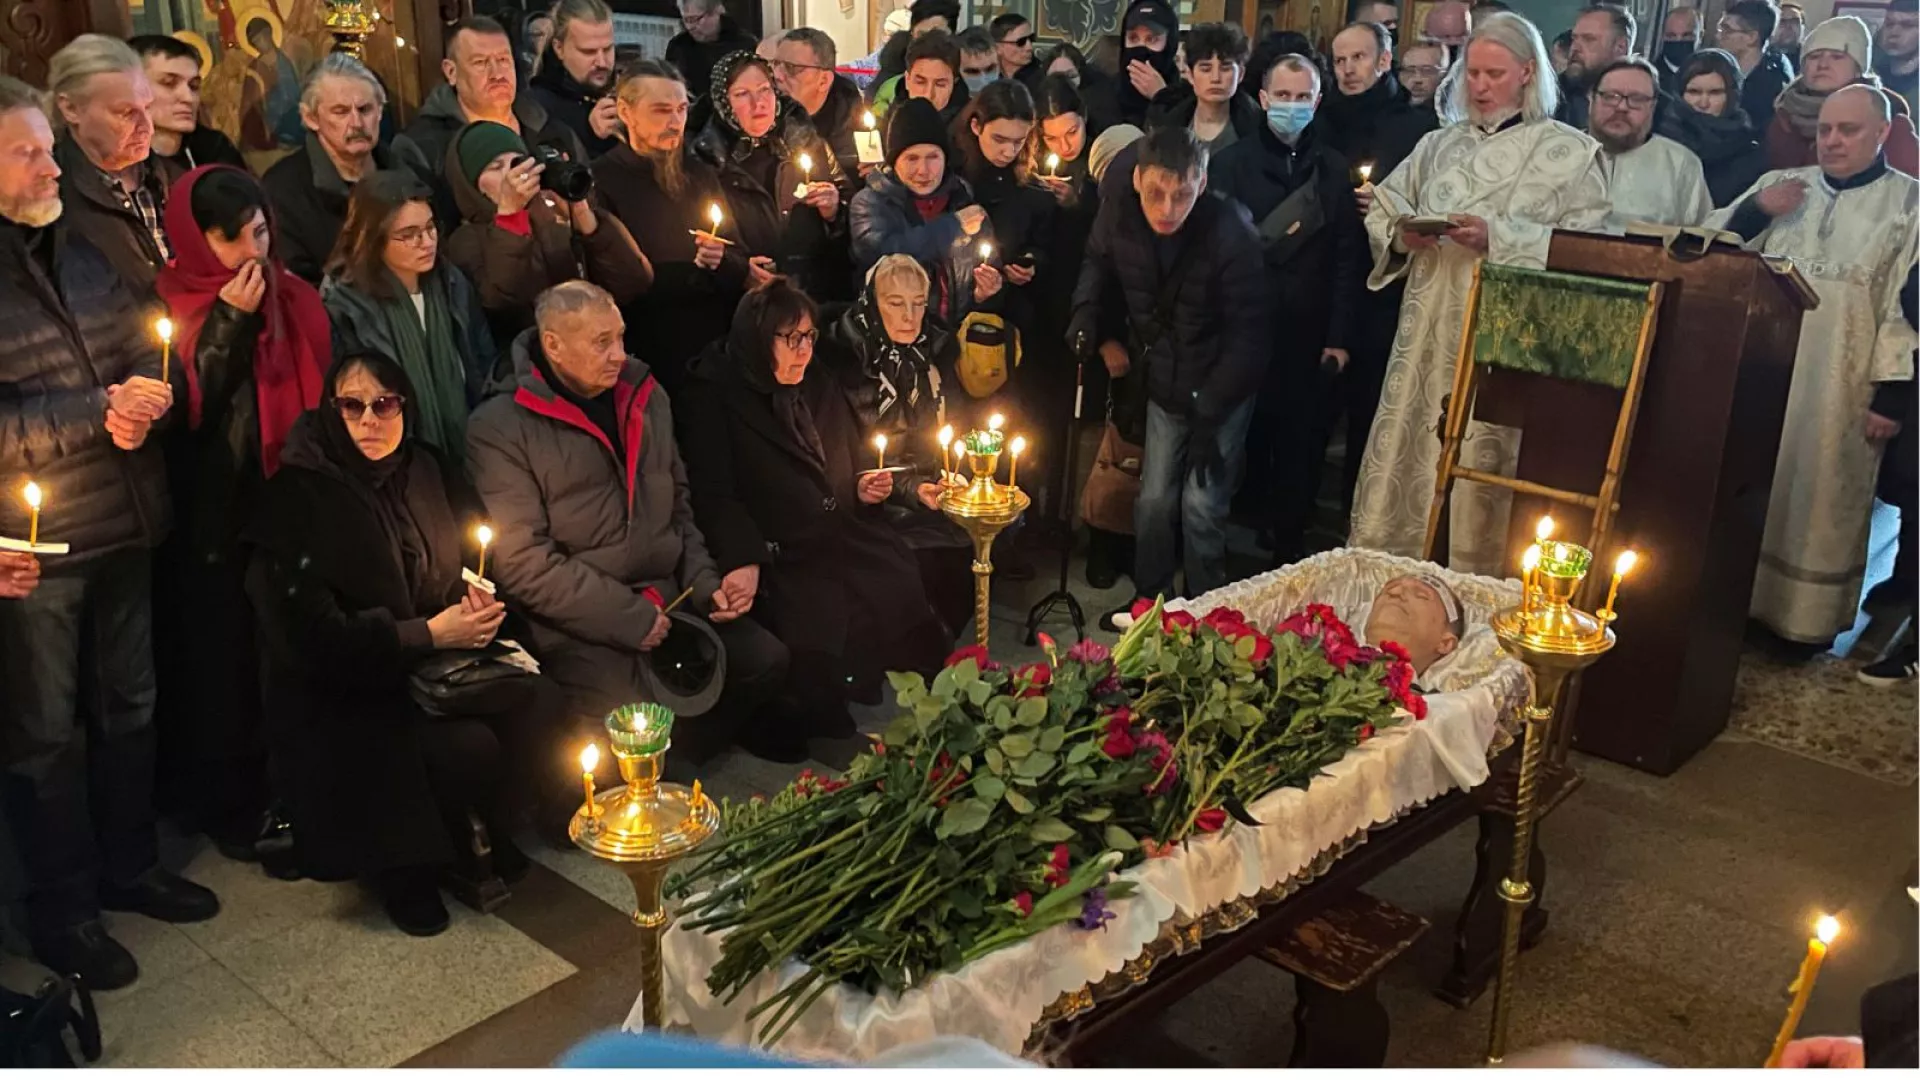 جسد الکسی ناوالنی با حضور هزاران نفر در روسیه به خاک سپرده شد / پوتین اینترنت را مختل کرد